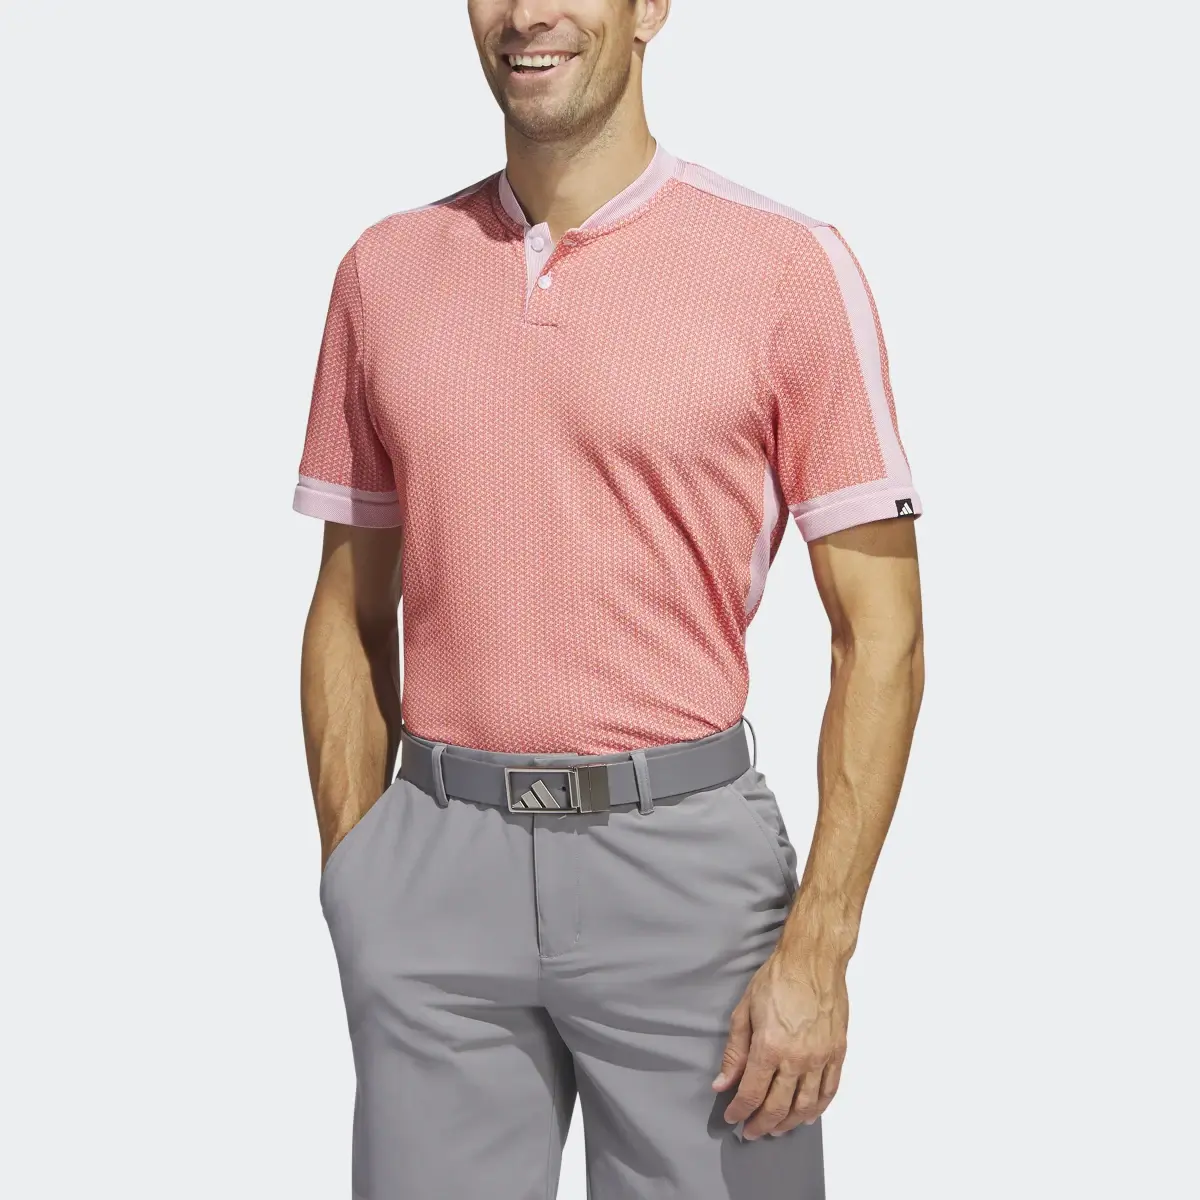 Adidas Ultimate365 Tour Textured PRIMEKNIT Golf Poloshirt. 1